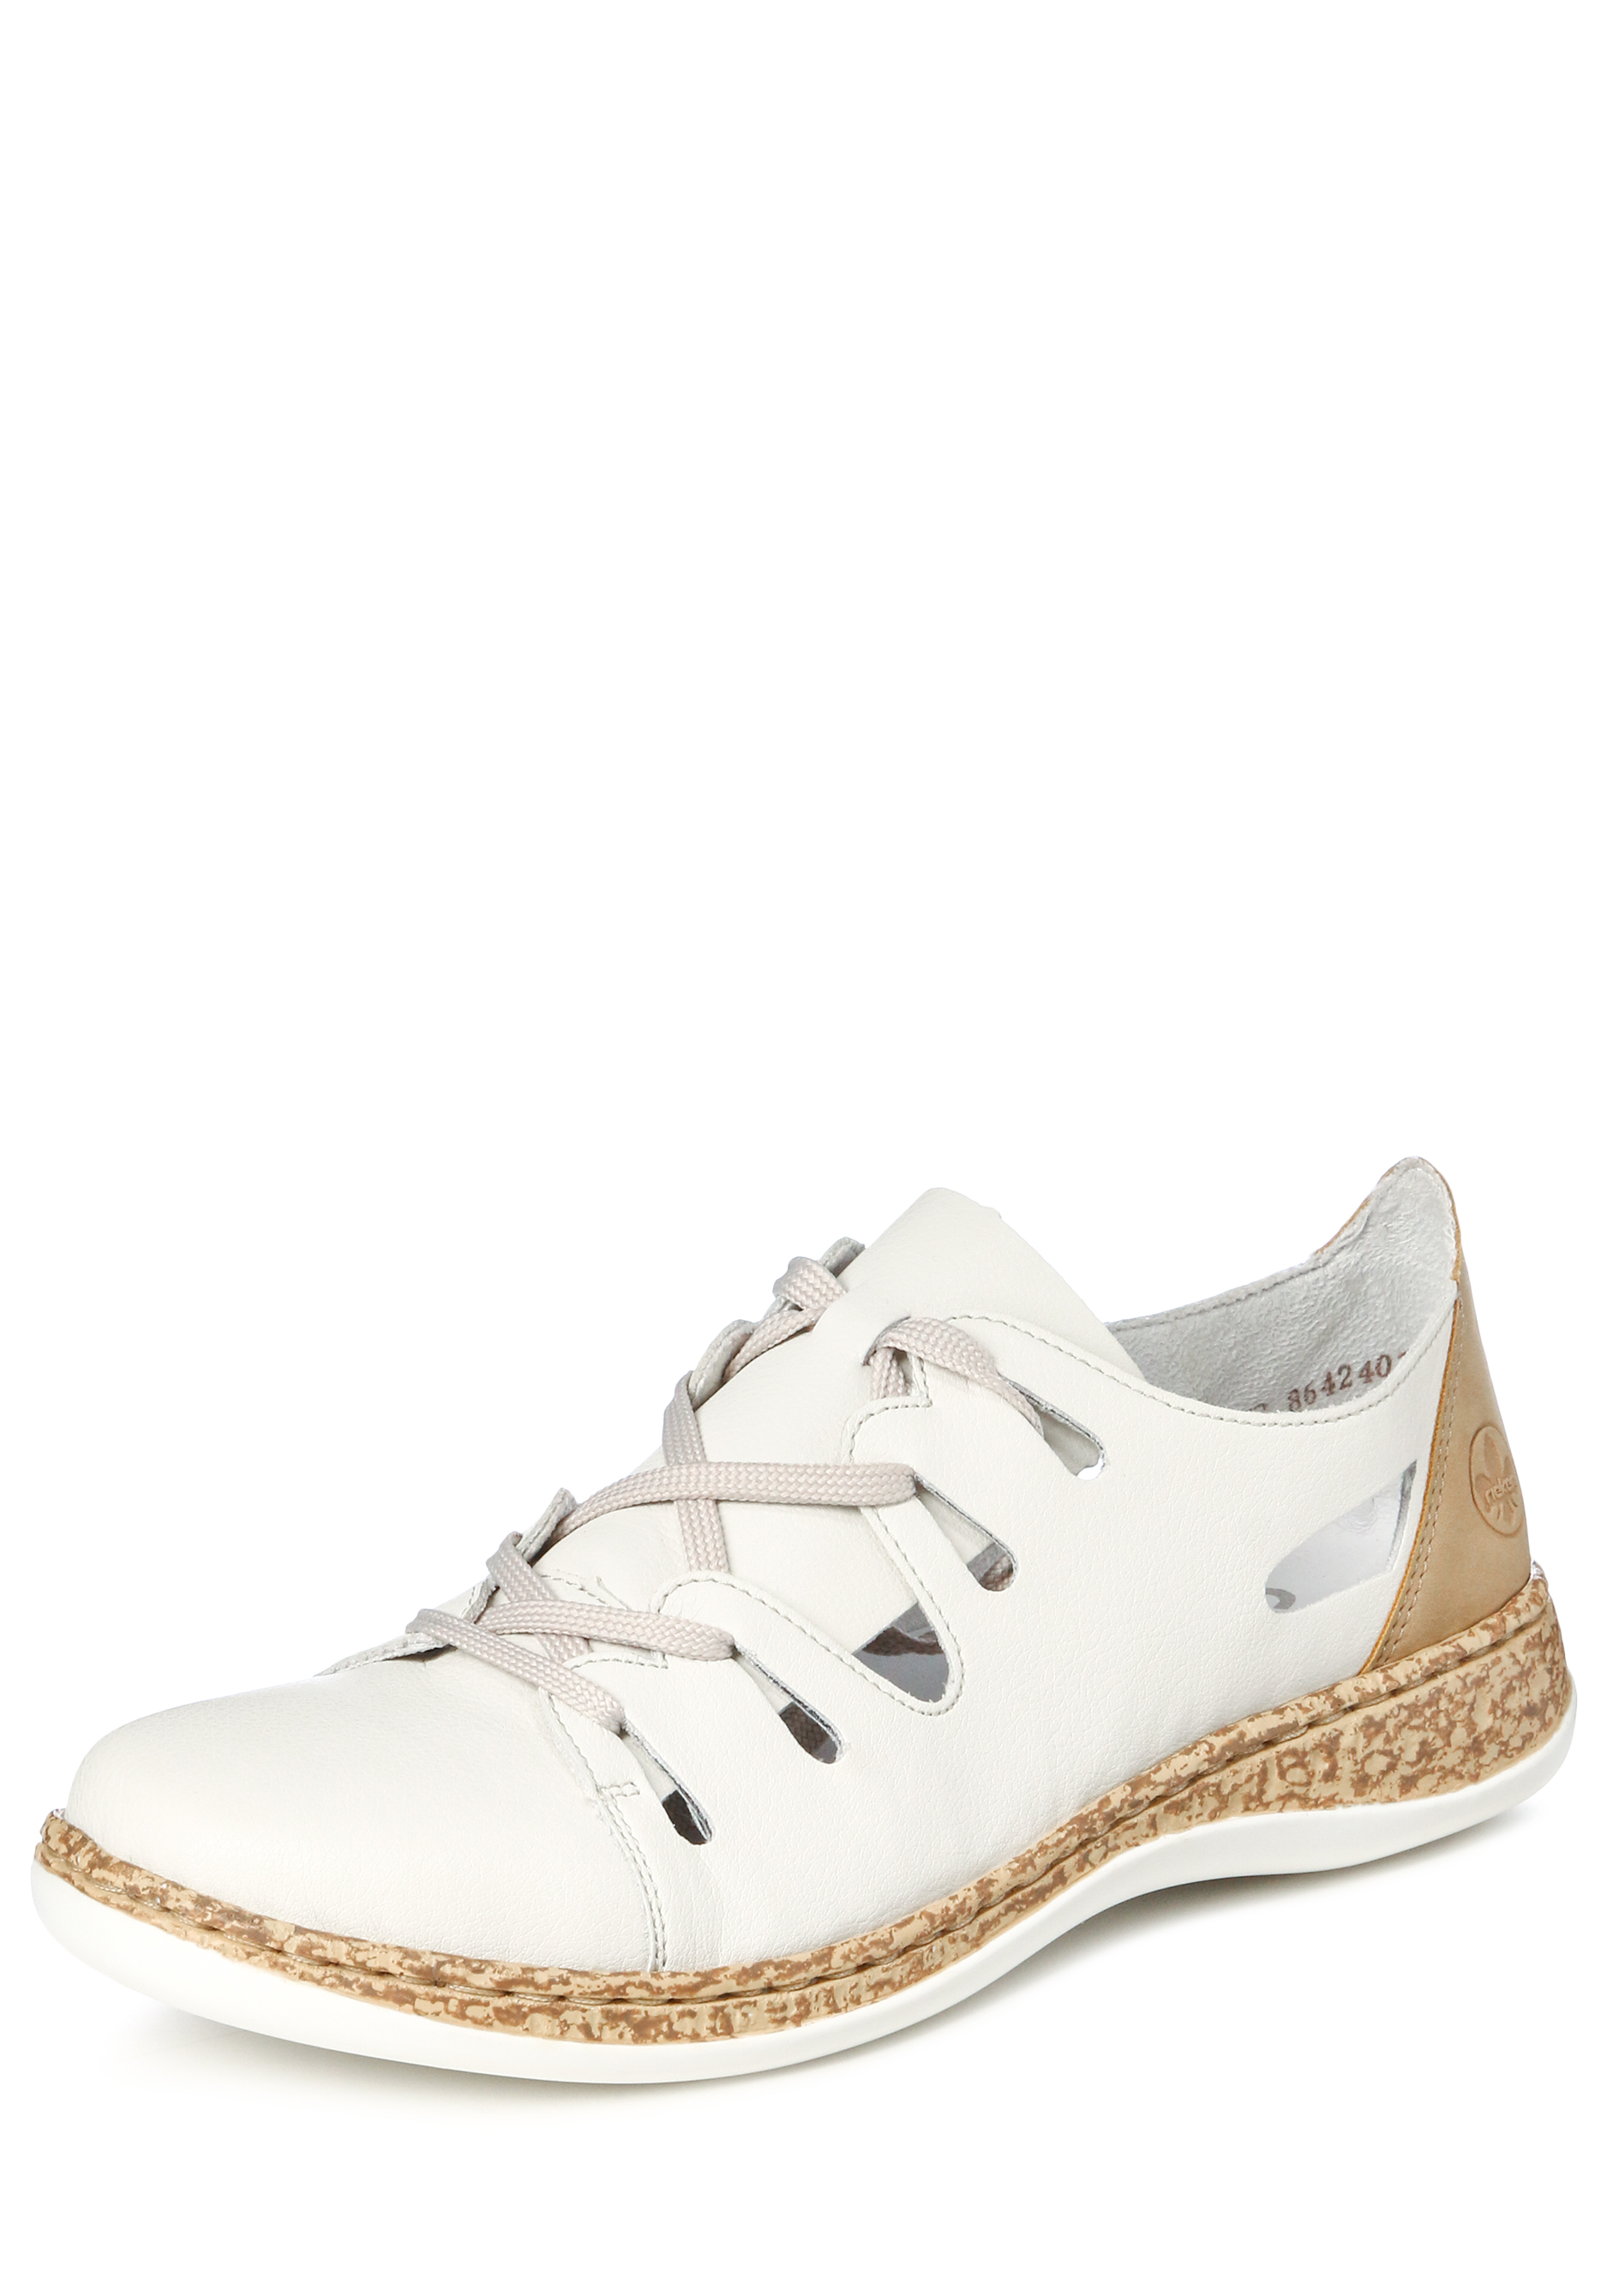 Туфли летние женские "Зои" Remonte, цвет белый, размер 37